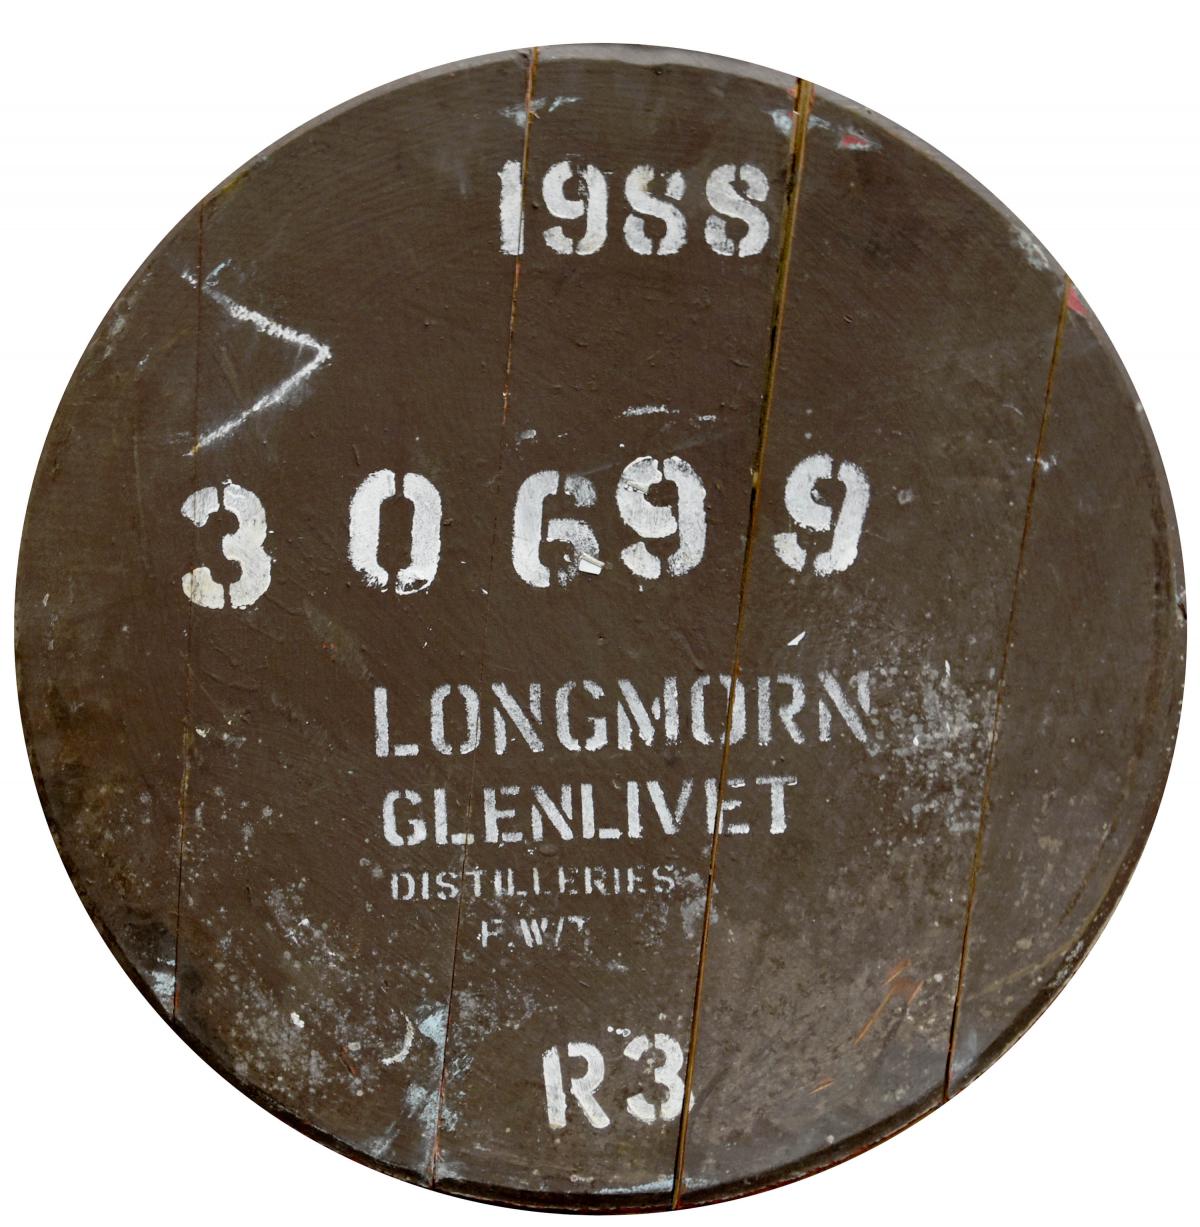 Longmorn-Glenlivet 1988 - Cask End